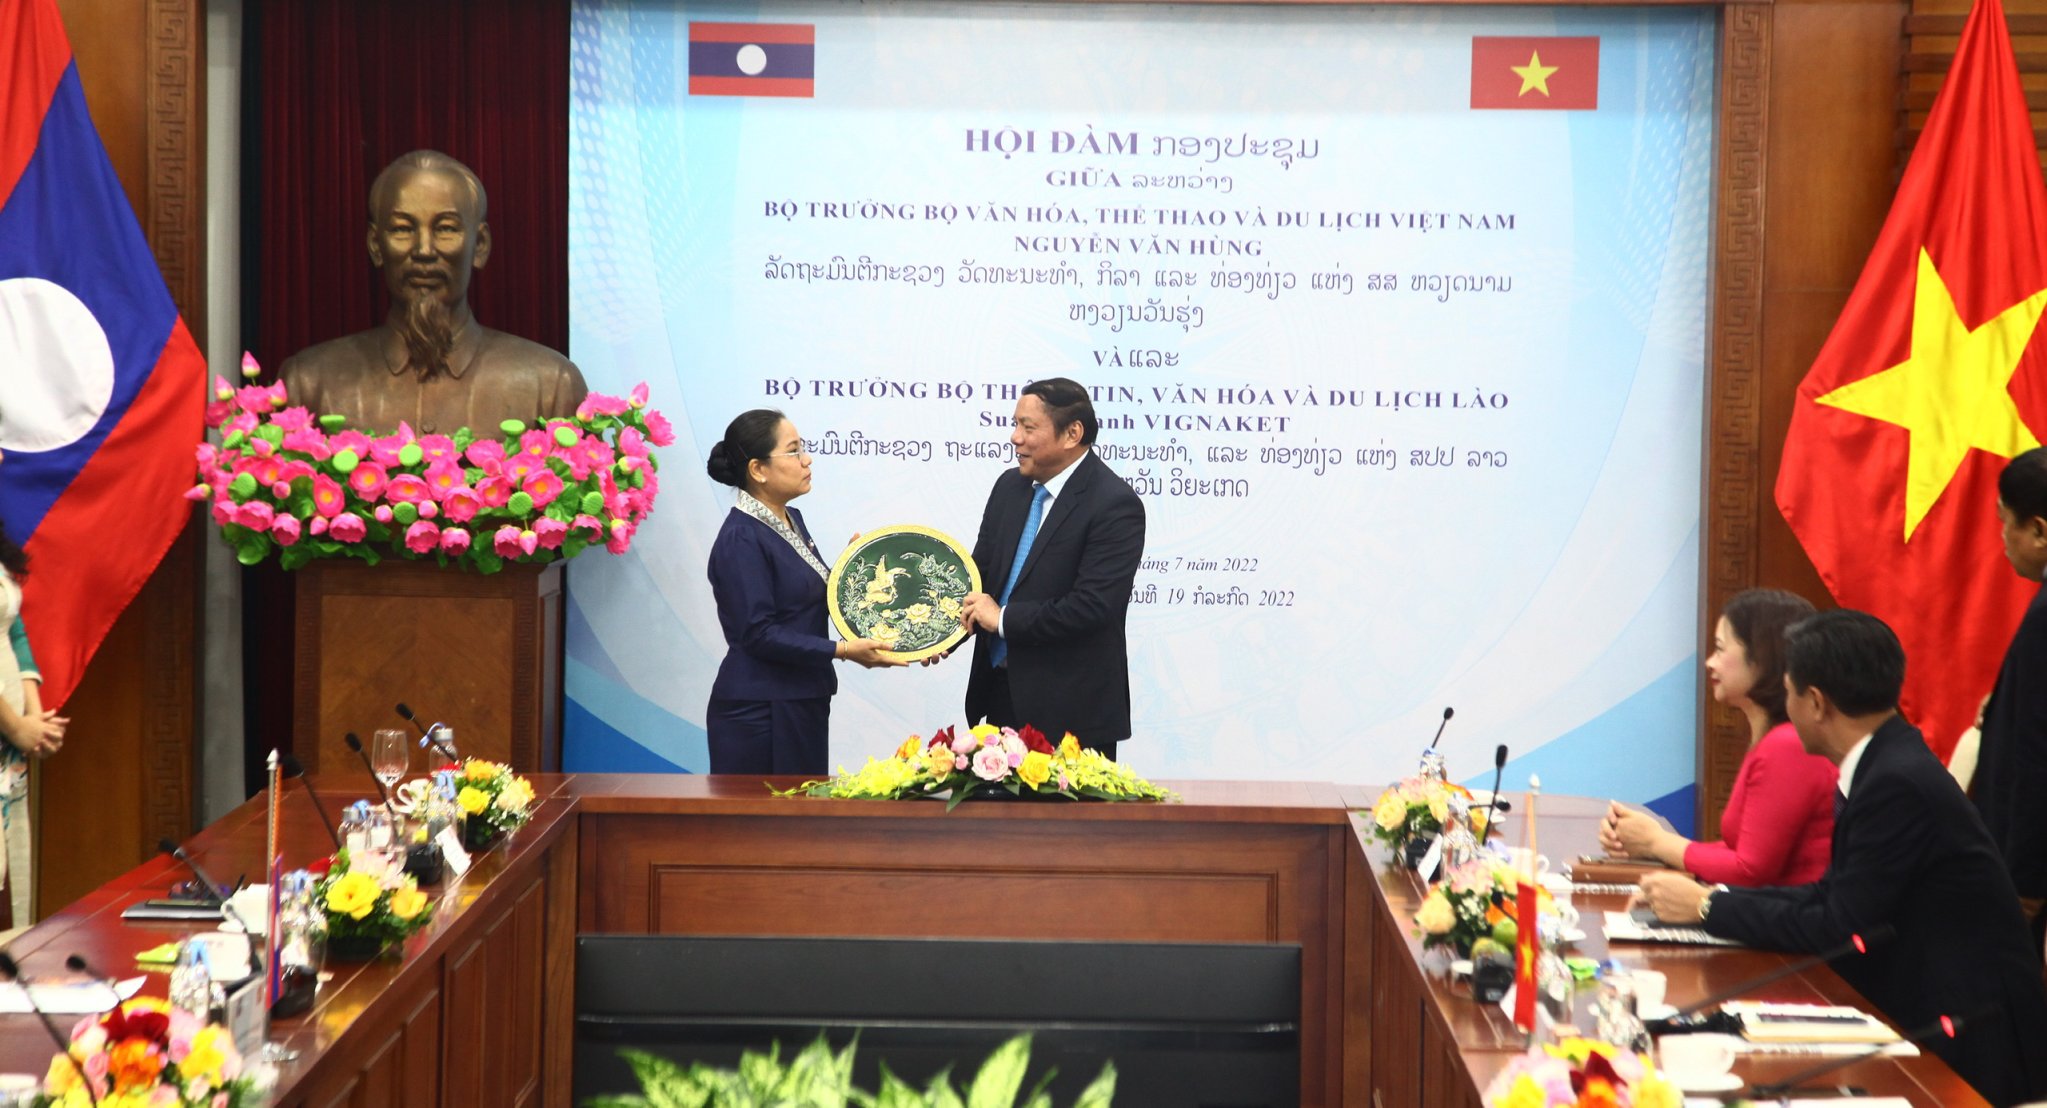 Bộ trưởng Bộ Văn hóa, Thể thao và Du lịch Việt Nam Nguyễn Văn Hùng tặng quà cho Bộ trưởng Bộ Thông tin, Văn hóa và Du lịch Lào Suanesavanh Vignaket